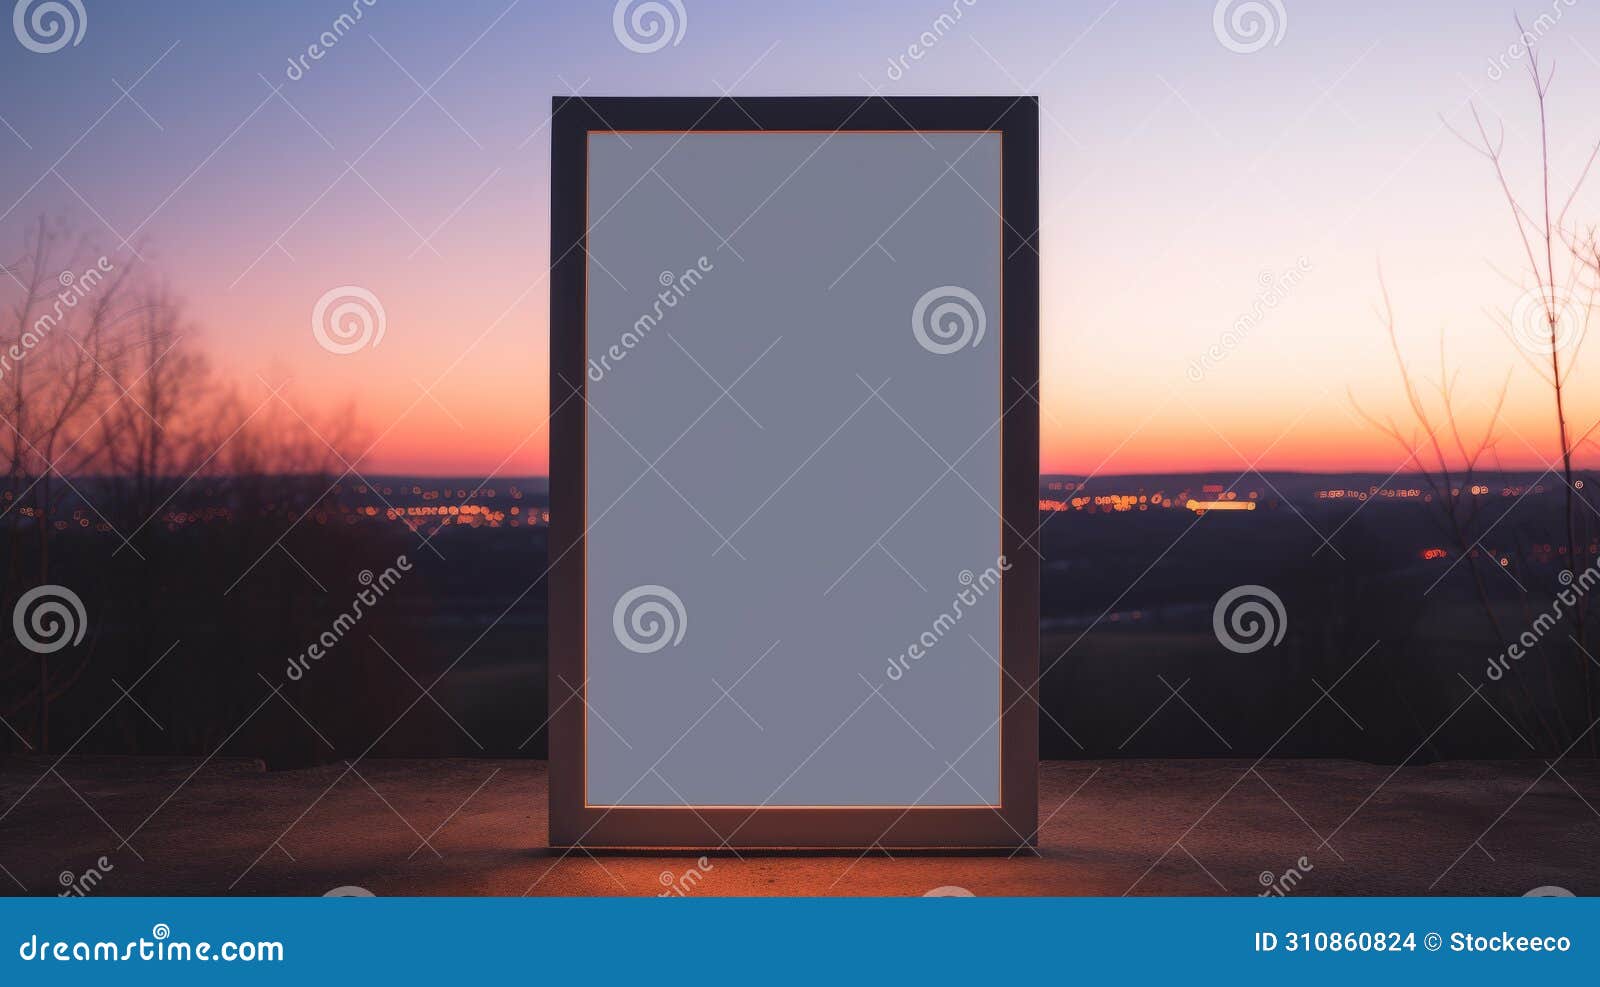 minimalist frame semantics mockup on dusk background 7x5 size